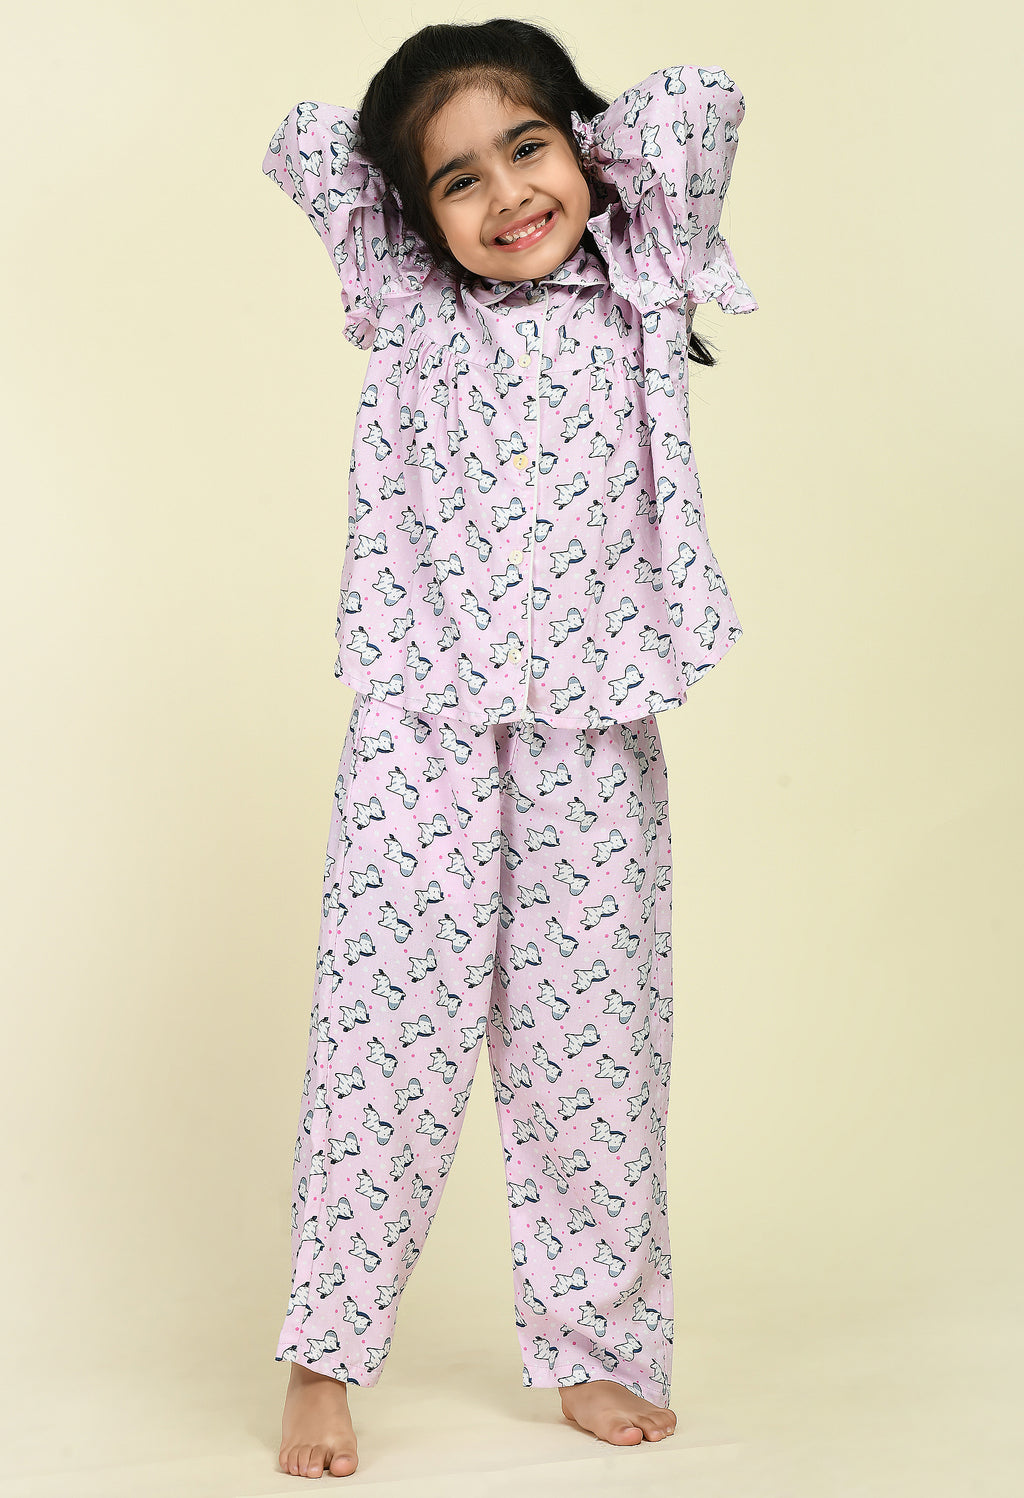 Kids Girls Child Nightdress Cotton Pajamas Lace Ruffle Sleepwears Princess  Sweet | eBay